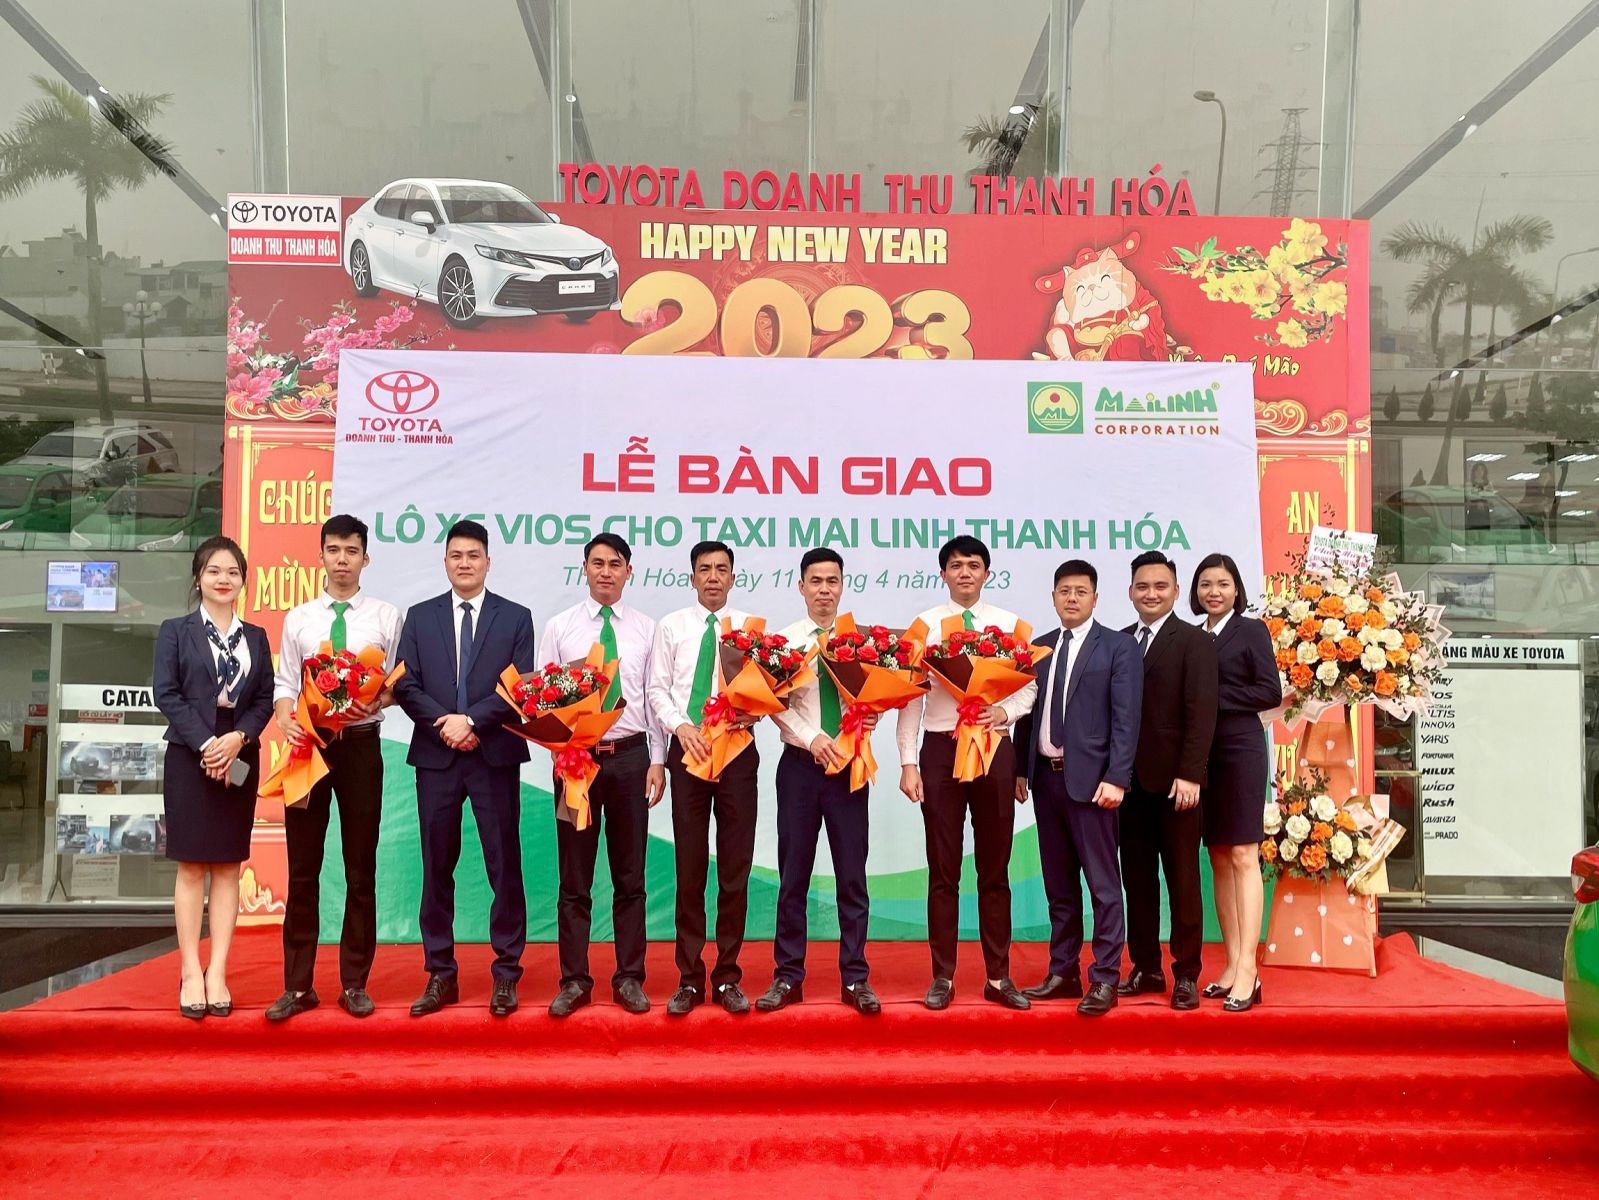 Lễ Bàn Giao Lô Xe Toyota Vios Cho Taxi Mai Linh Thanh Hóa